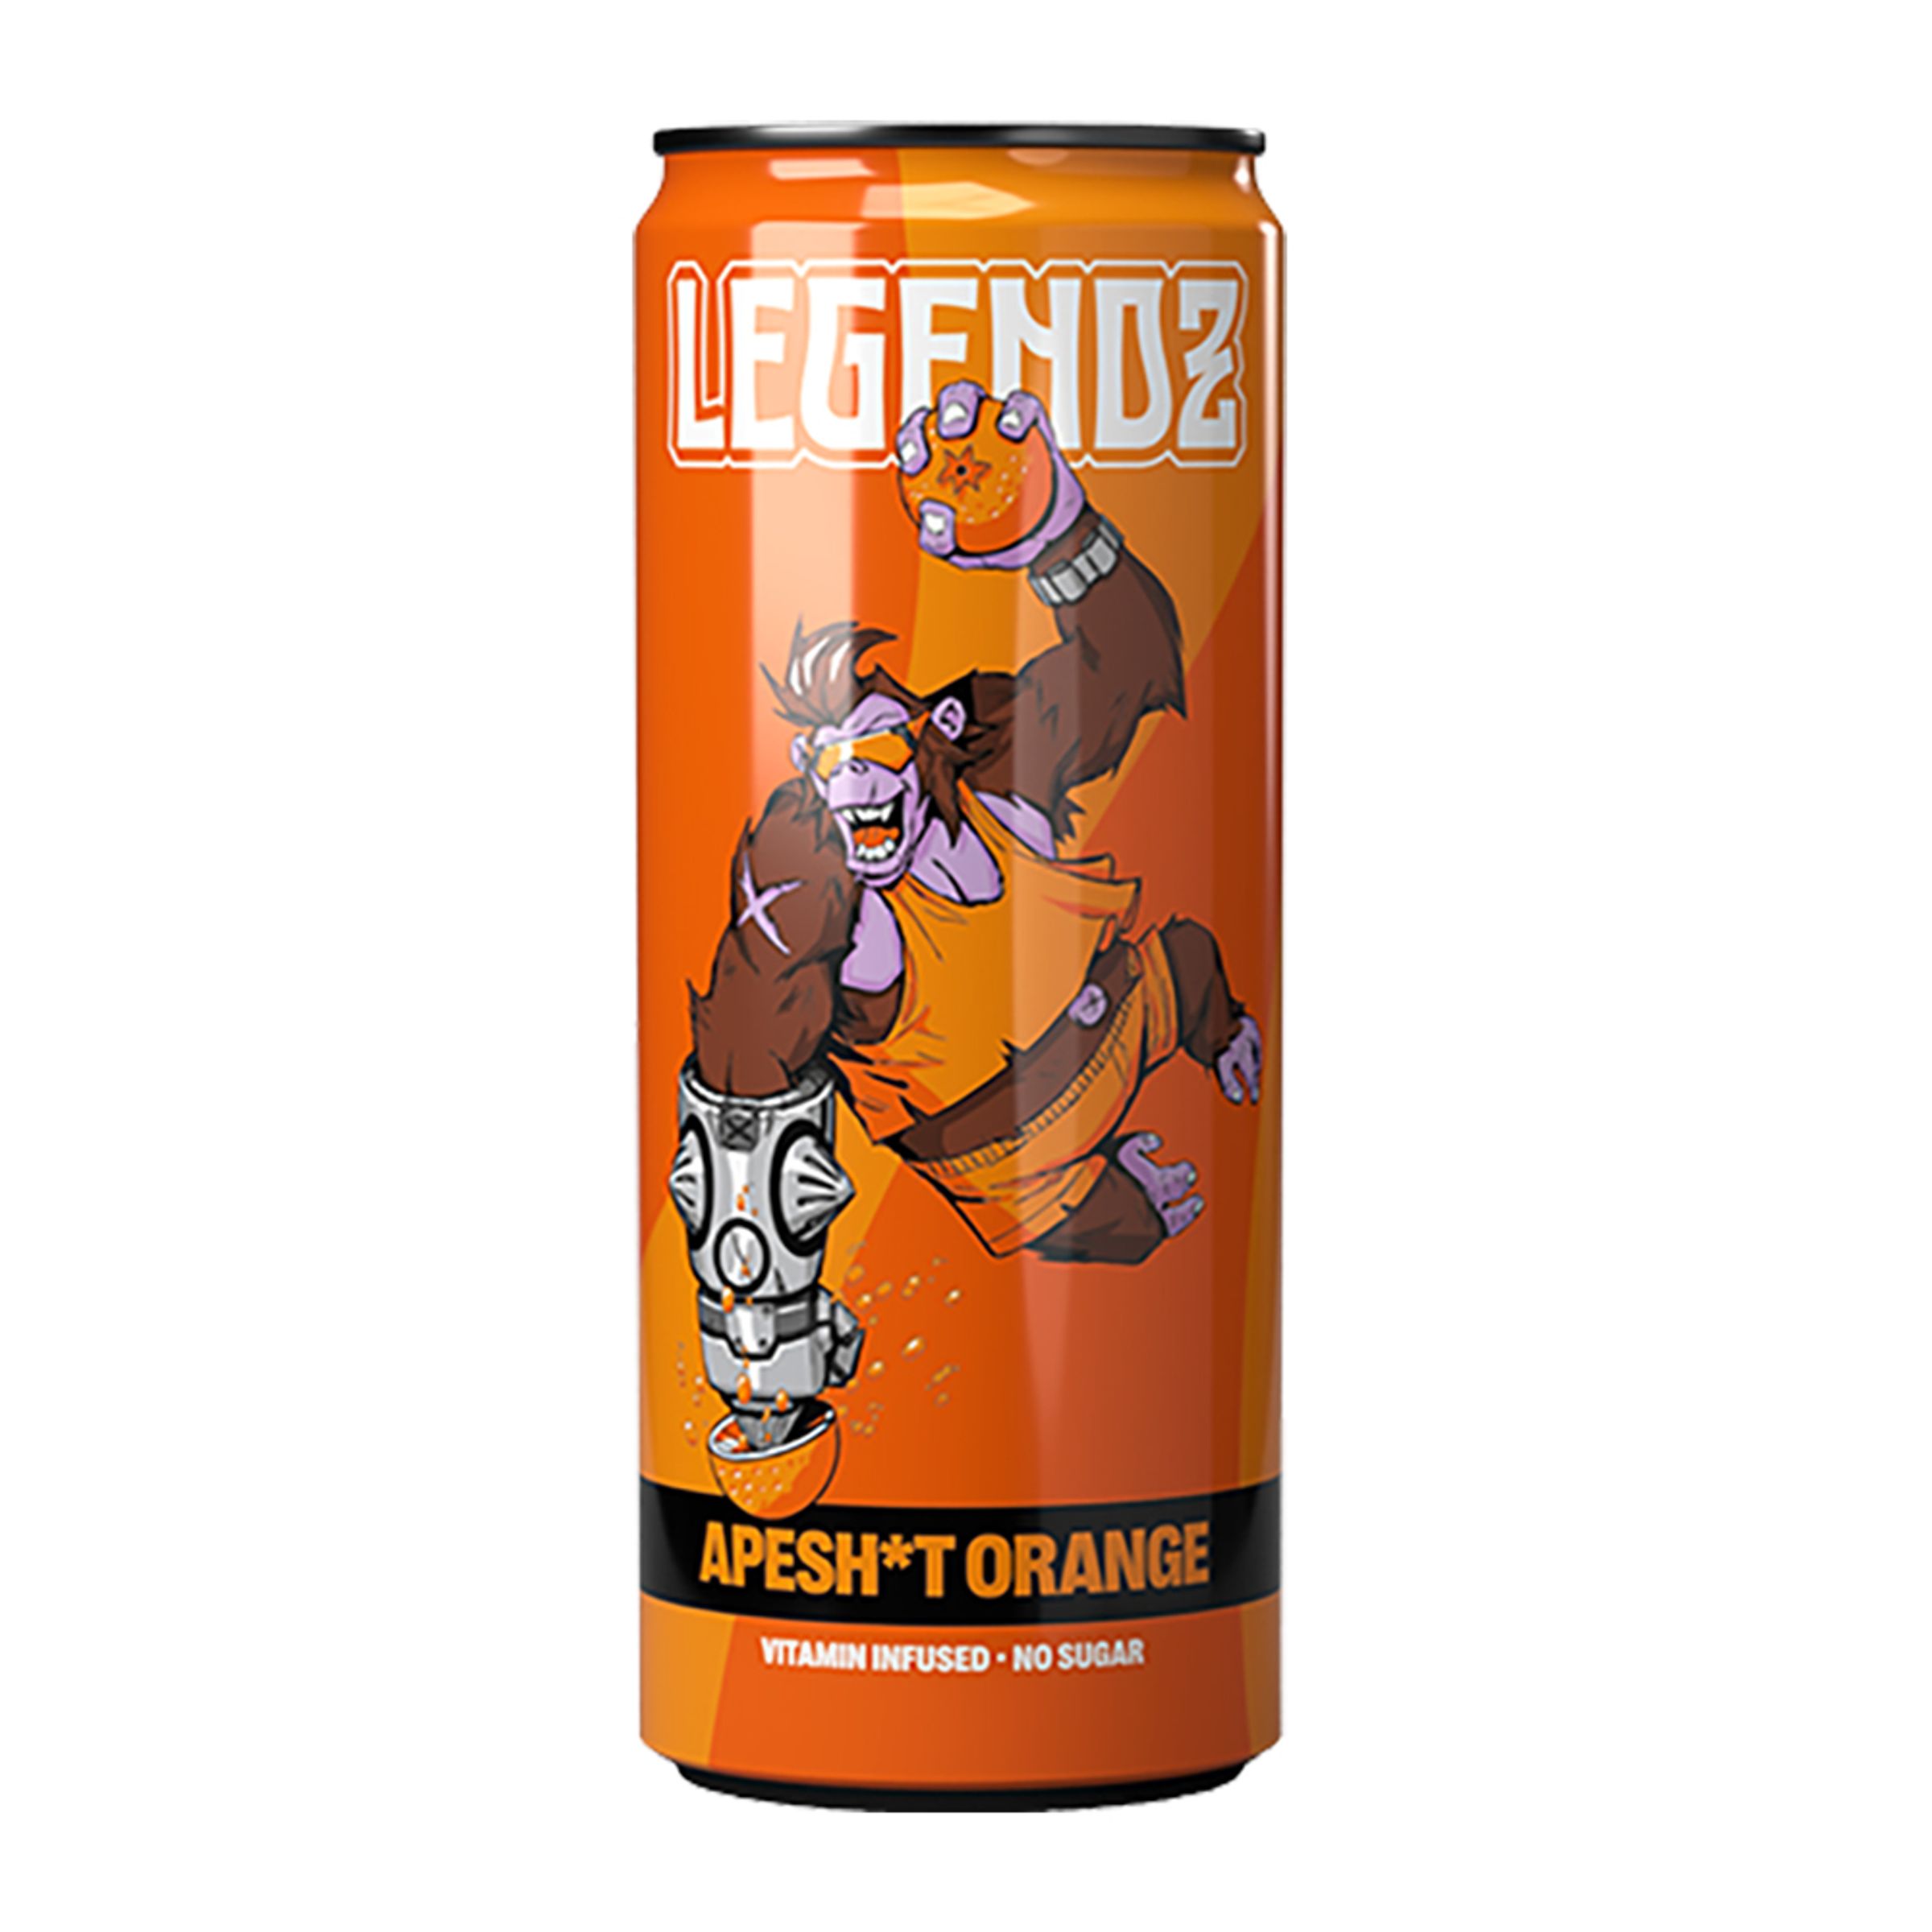 Legendz Apesh*t Orange - 24-pack